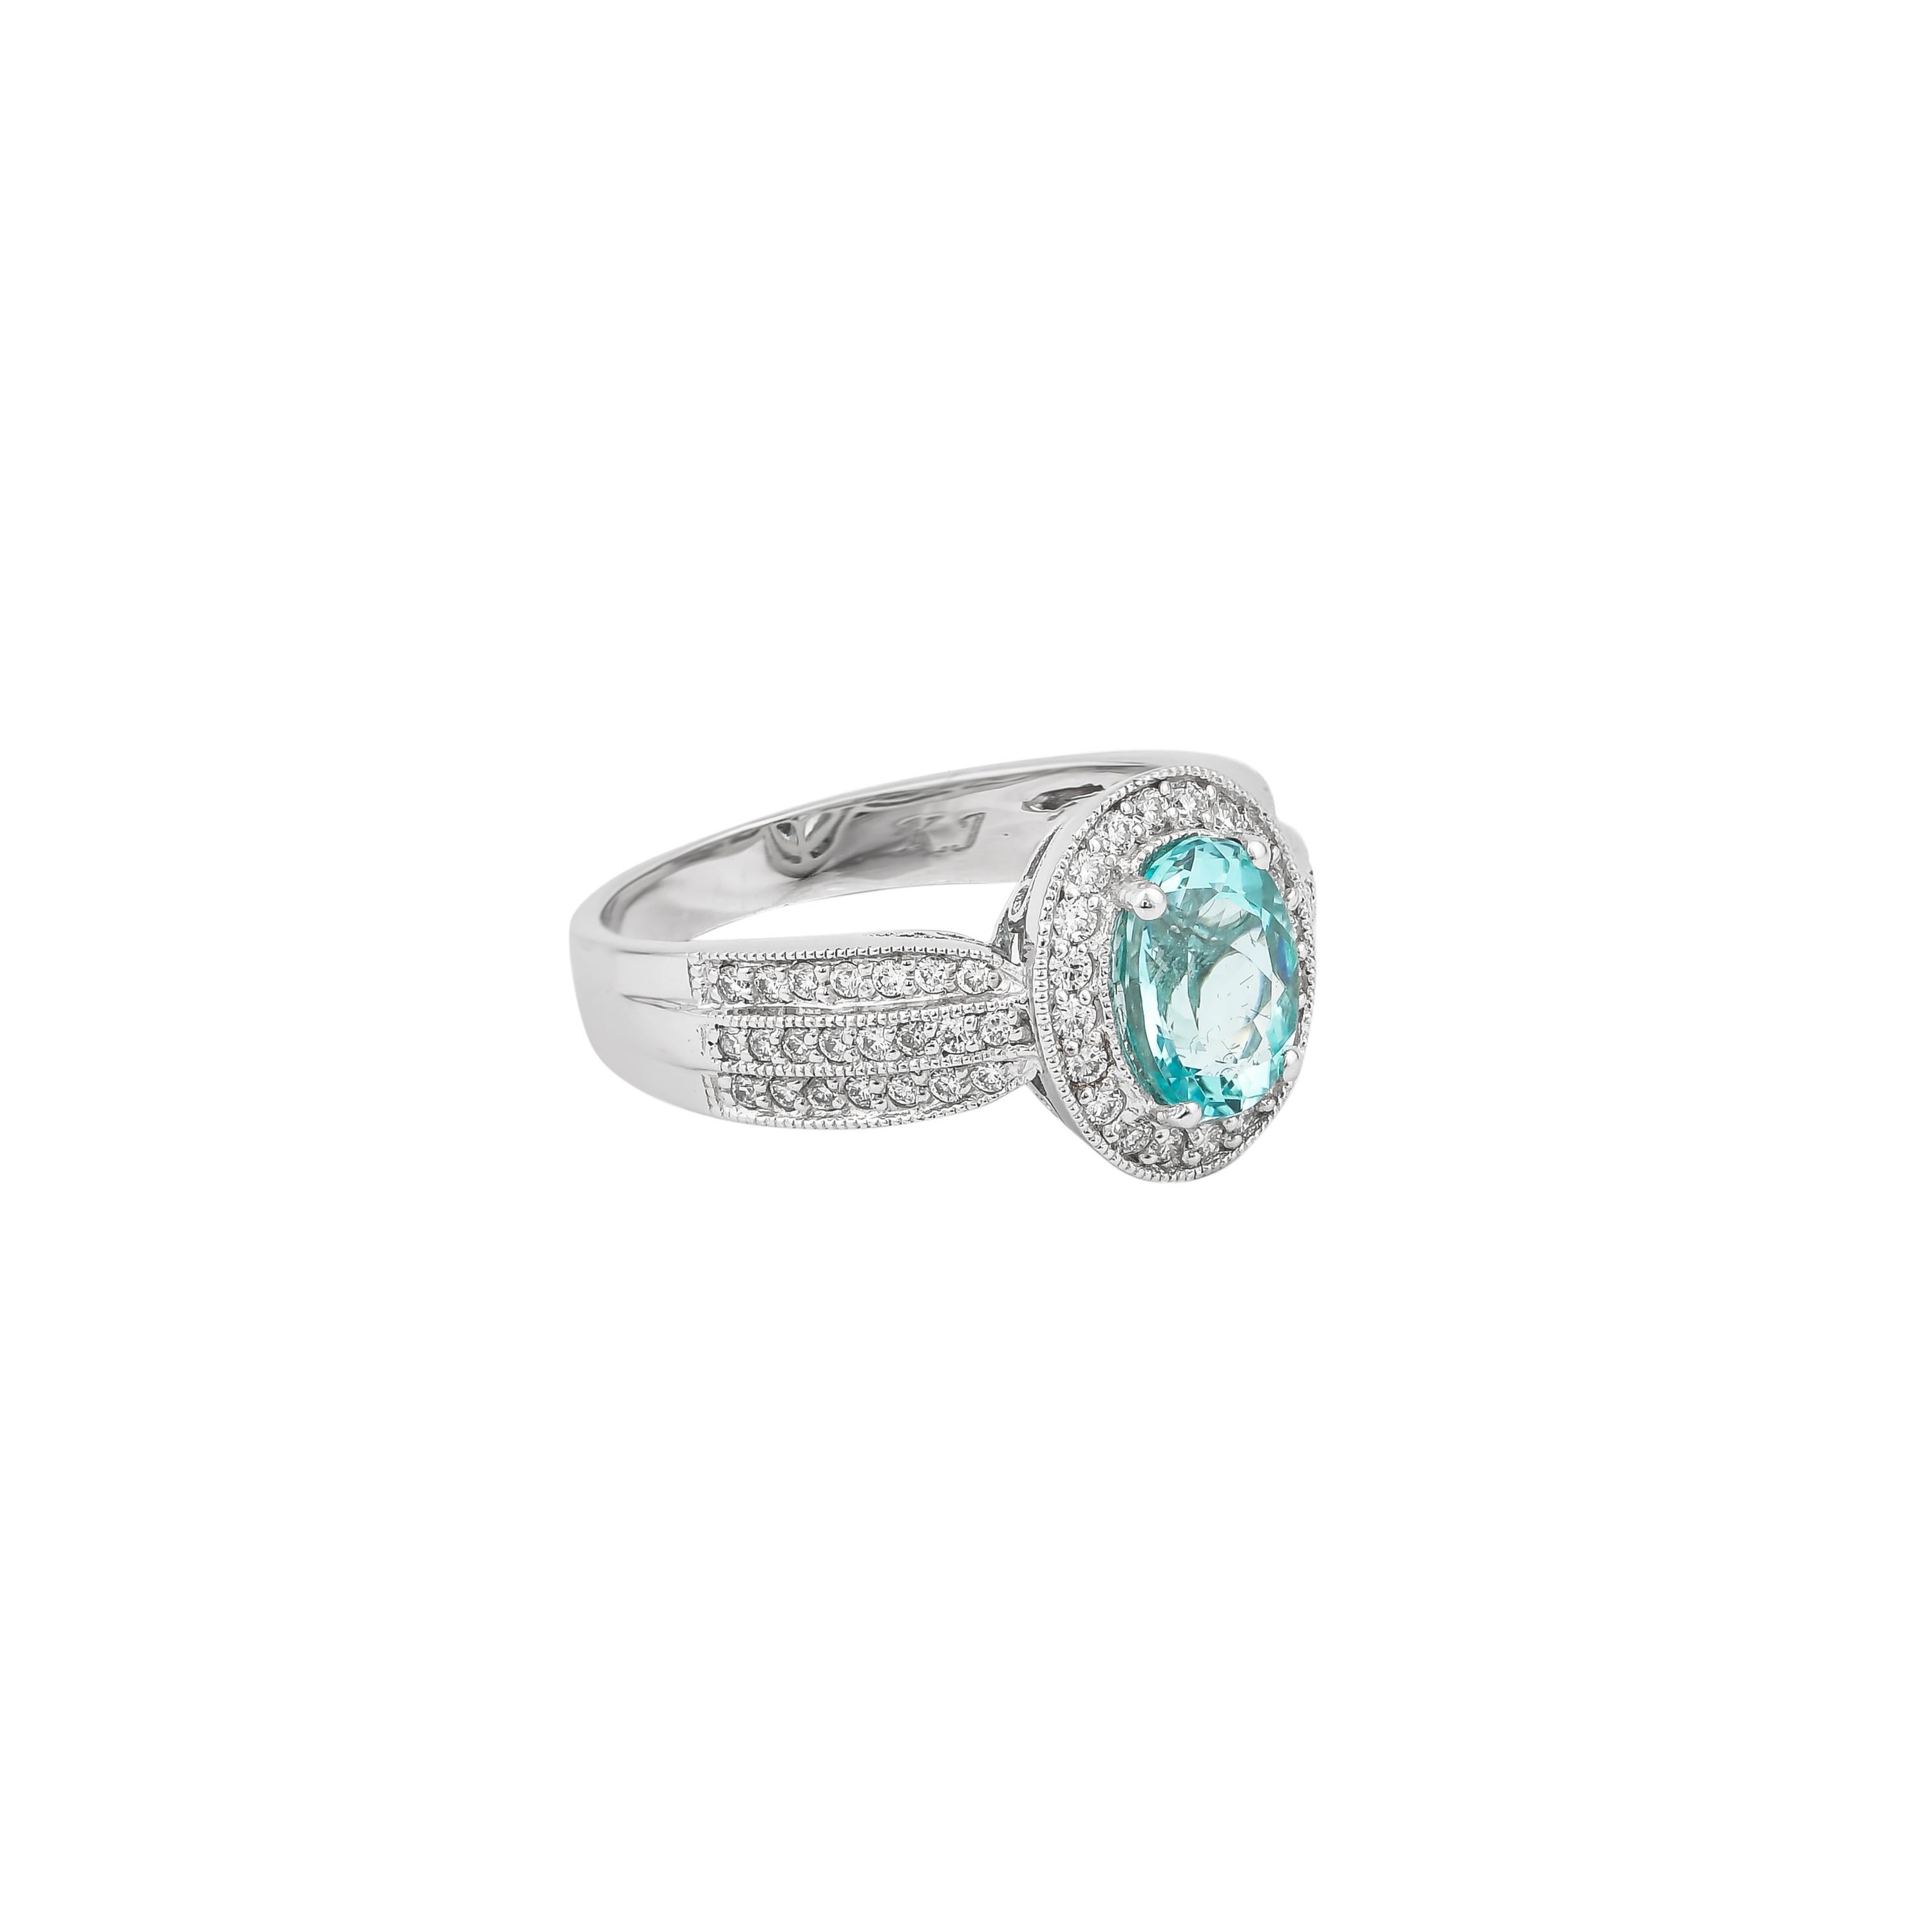 1.4 carat oval diamond ring